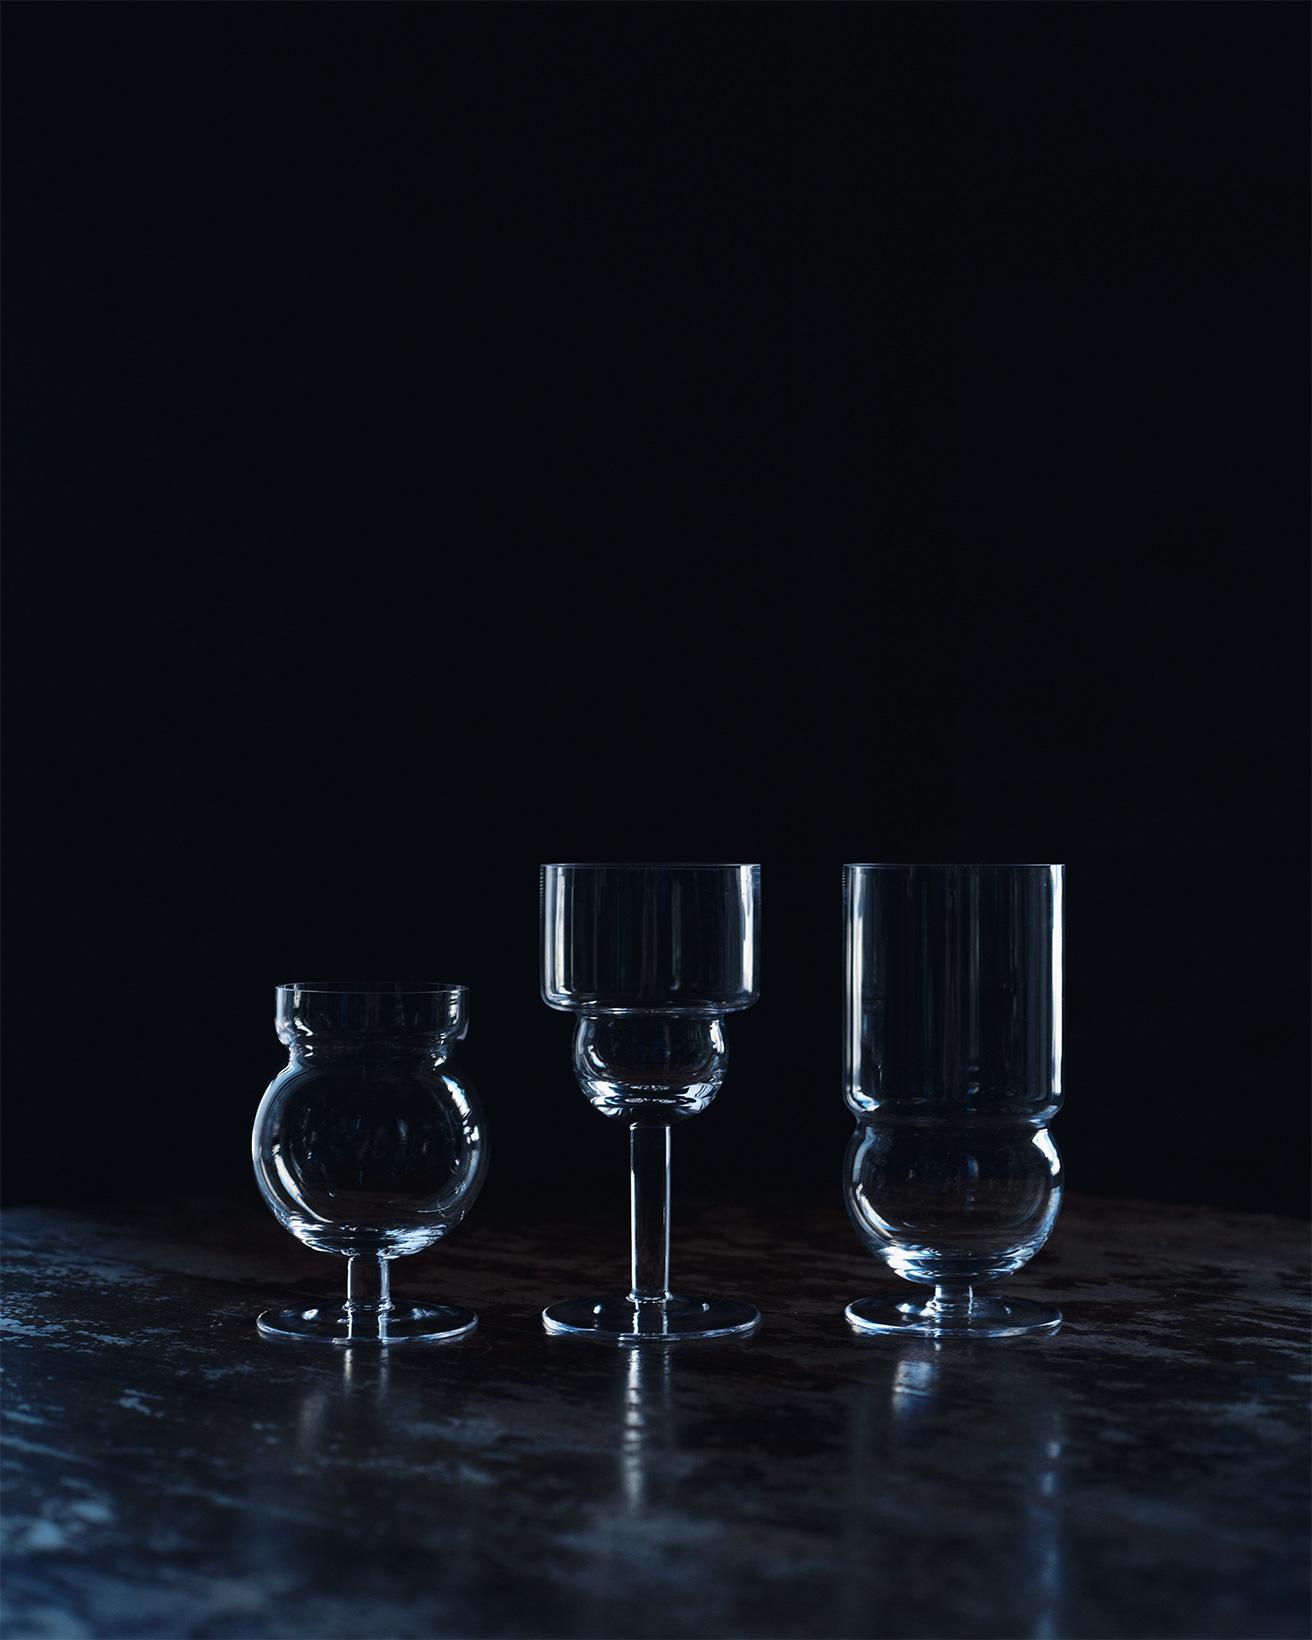 お酒やタバコを愛したイタリア出身のデザイナー、ジョエ・コロンボが幾何学的なフォルムを組み合わせて全6種類のグラスシリーズをデザイン。目立つ花弁だけでなく、枝の分岐や茎のカーブも楽しめるのは、透明なガラスならでは。〈カラクター〉の《スフェリコ グラスシリーズ》左 H10.5×φ7.5cm、中H14.5c×φ7m、右H14.5×φ7cm 各4,730円（全てカッシーナ・イクスシー青山本店 TEL 03 5474 9001）